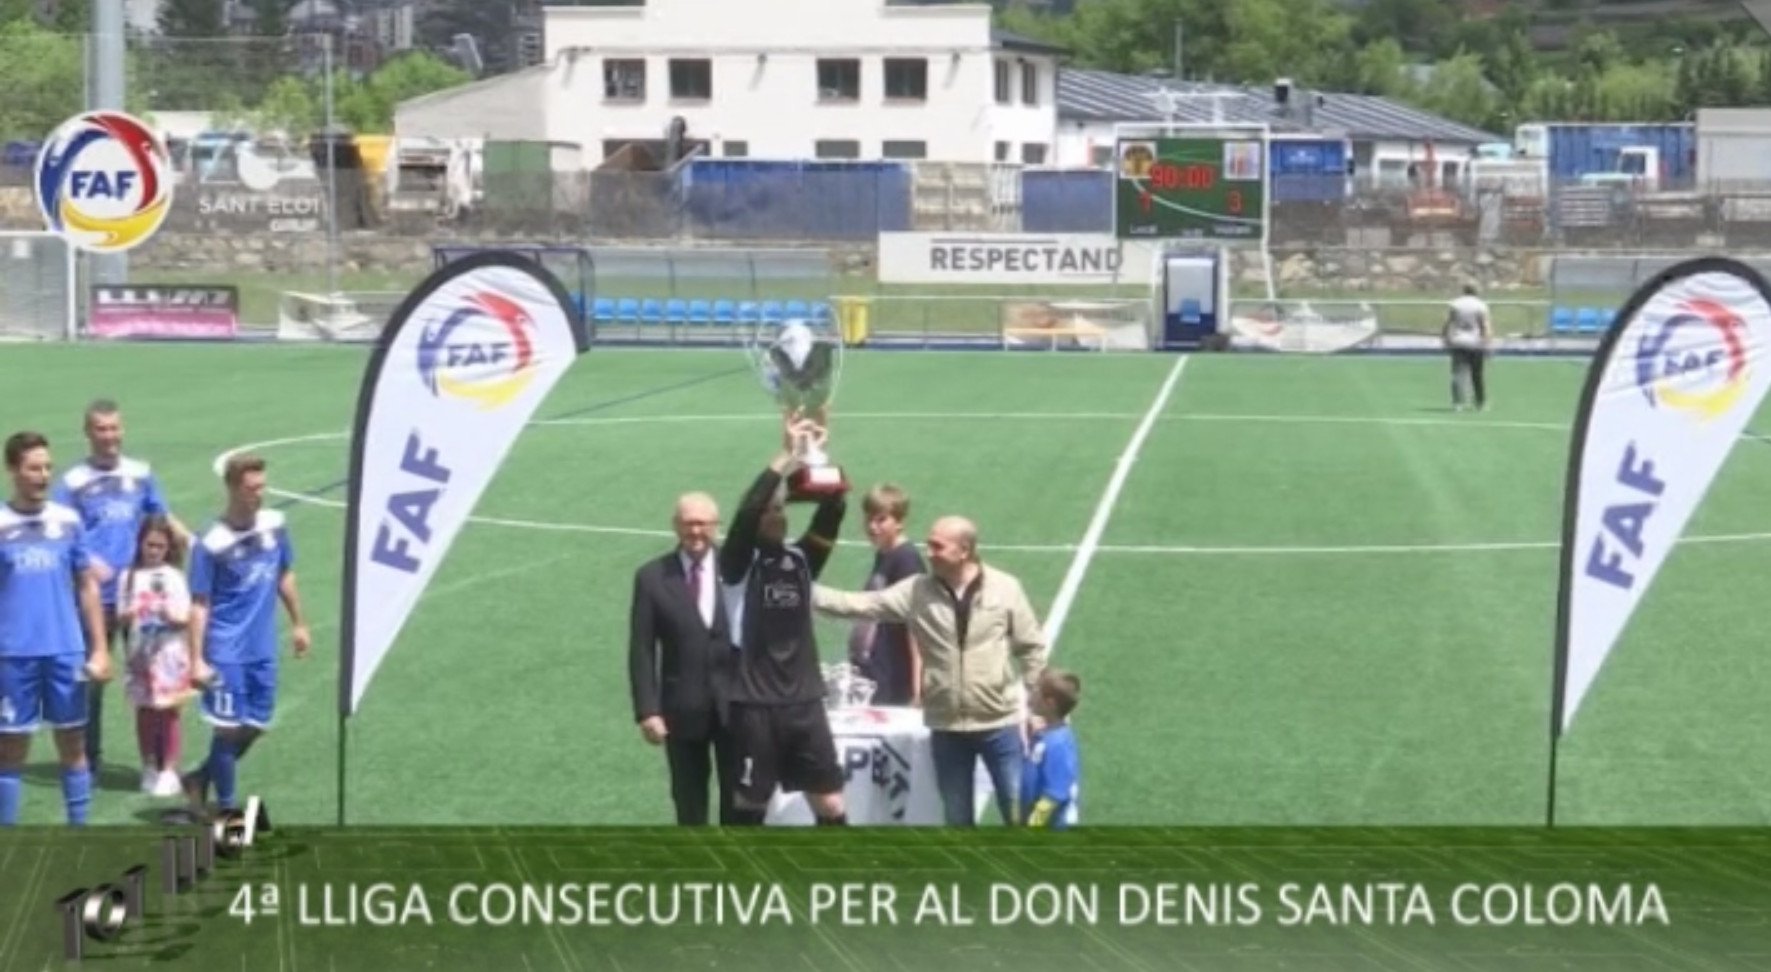 Tot Lliga - 4a lliga consecutiva per al Don Denis Santa Coloma